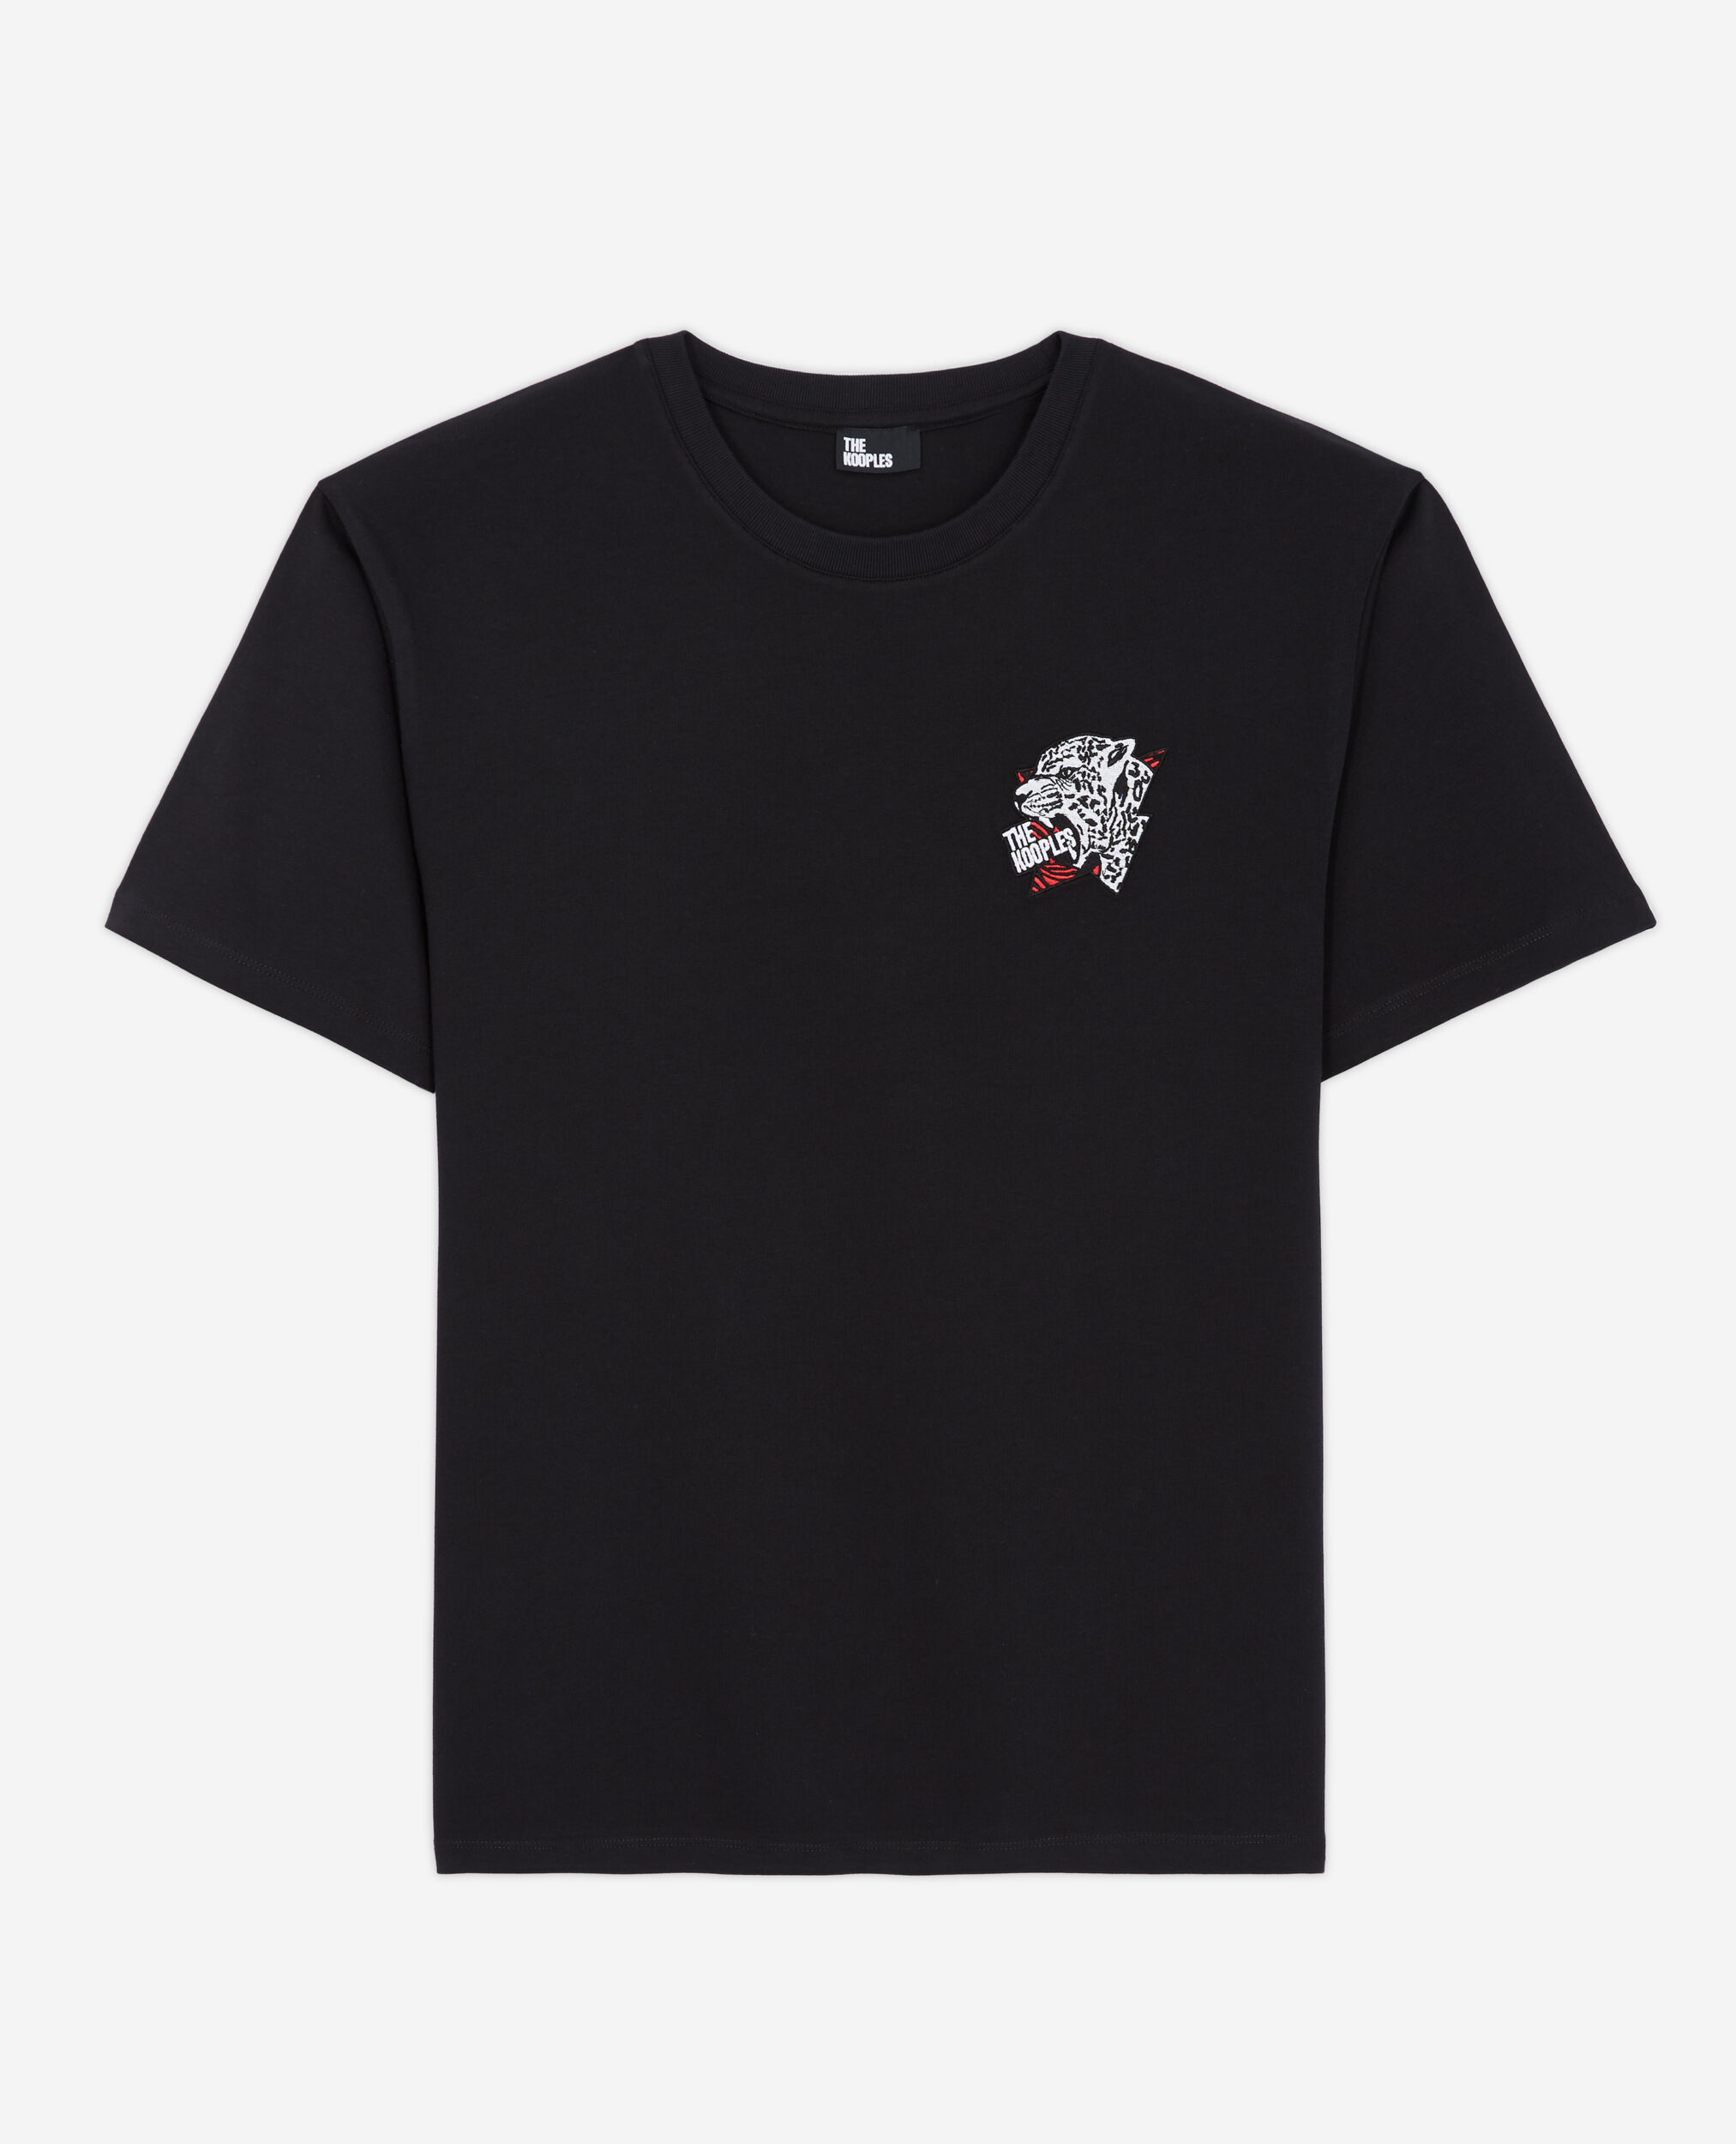 Schwarzes T-Shirt Herren mit Siebdruck, BLACK, hi-res image number null